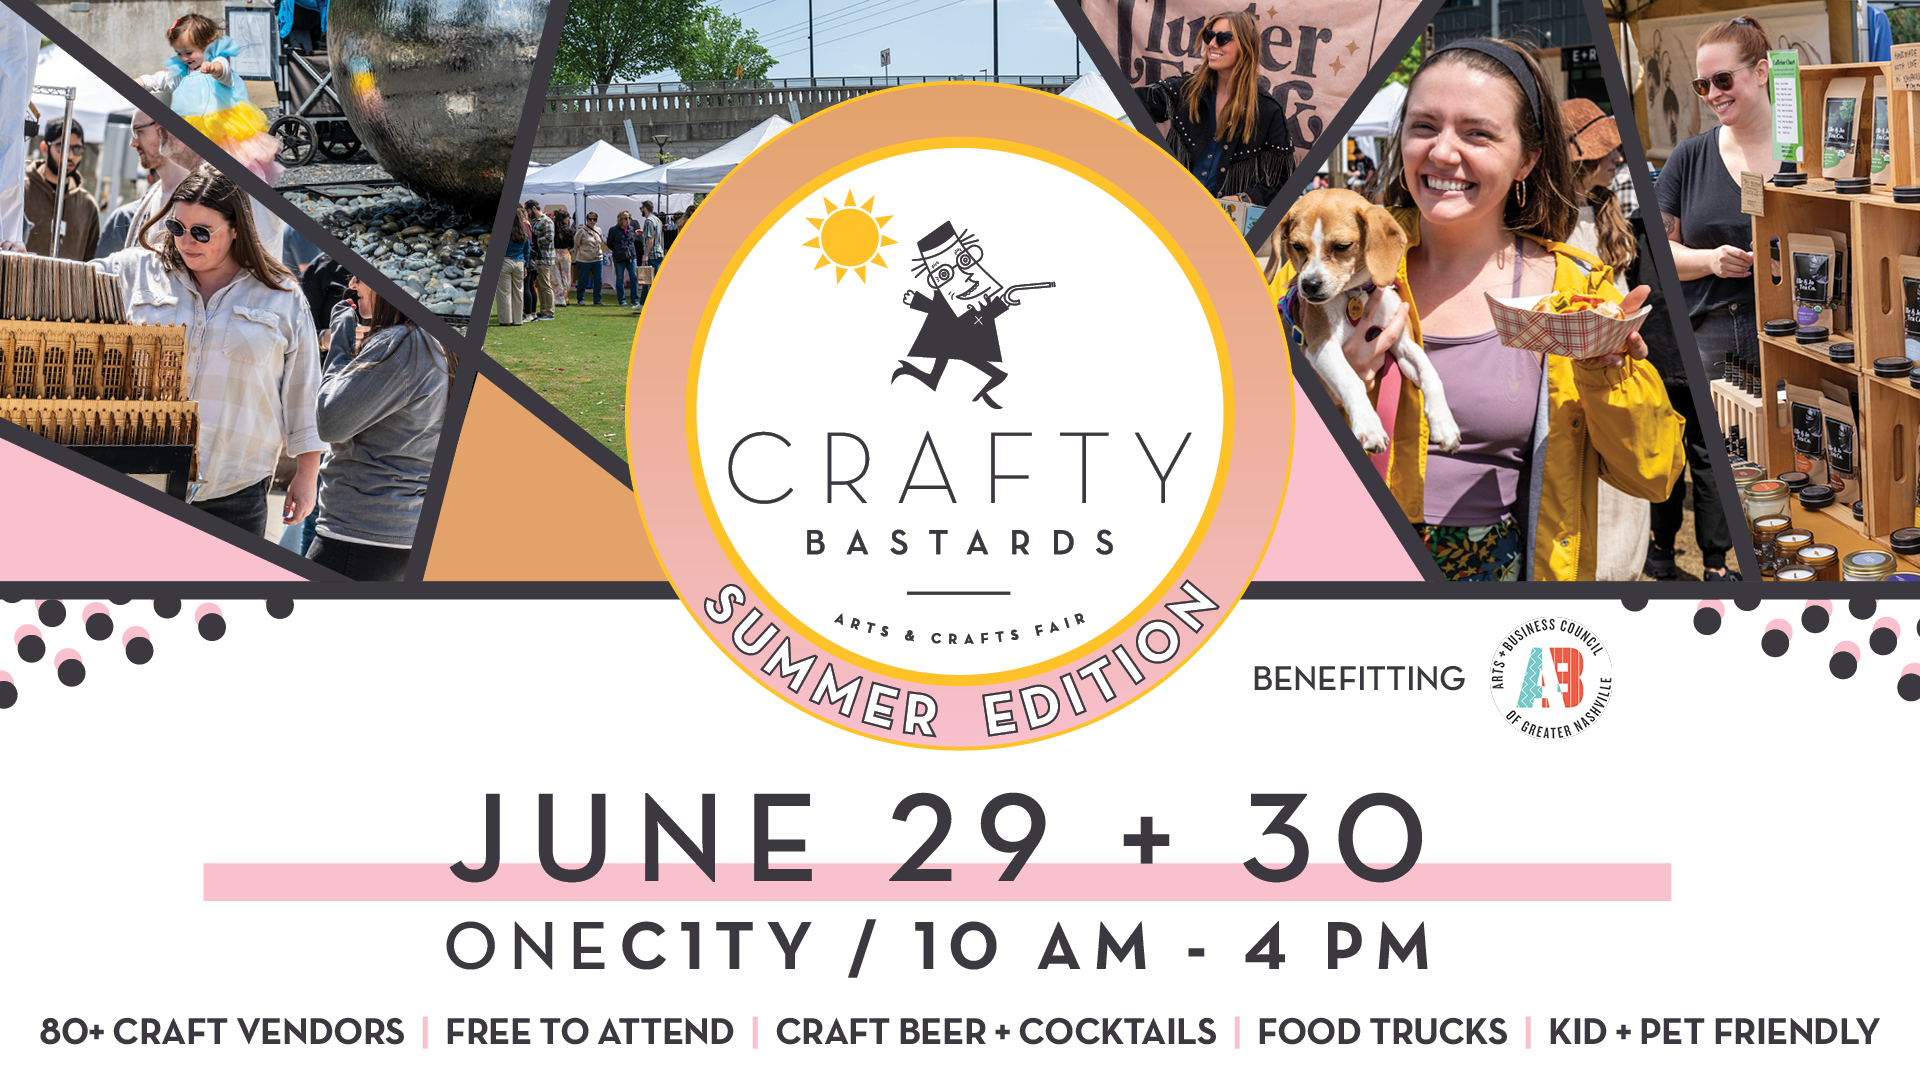 Crafty Bastards Arts & Crafts Fair Nashville, TN - Summer Edition